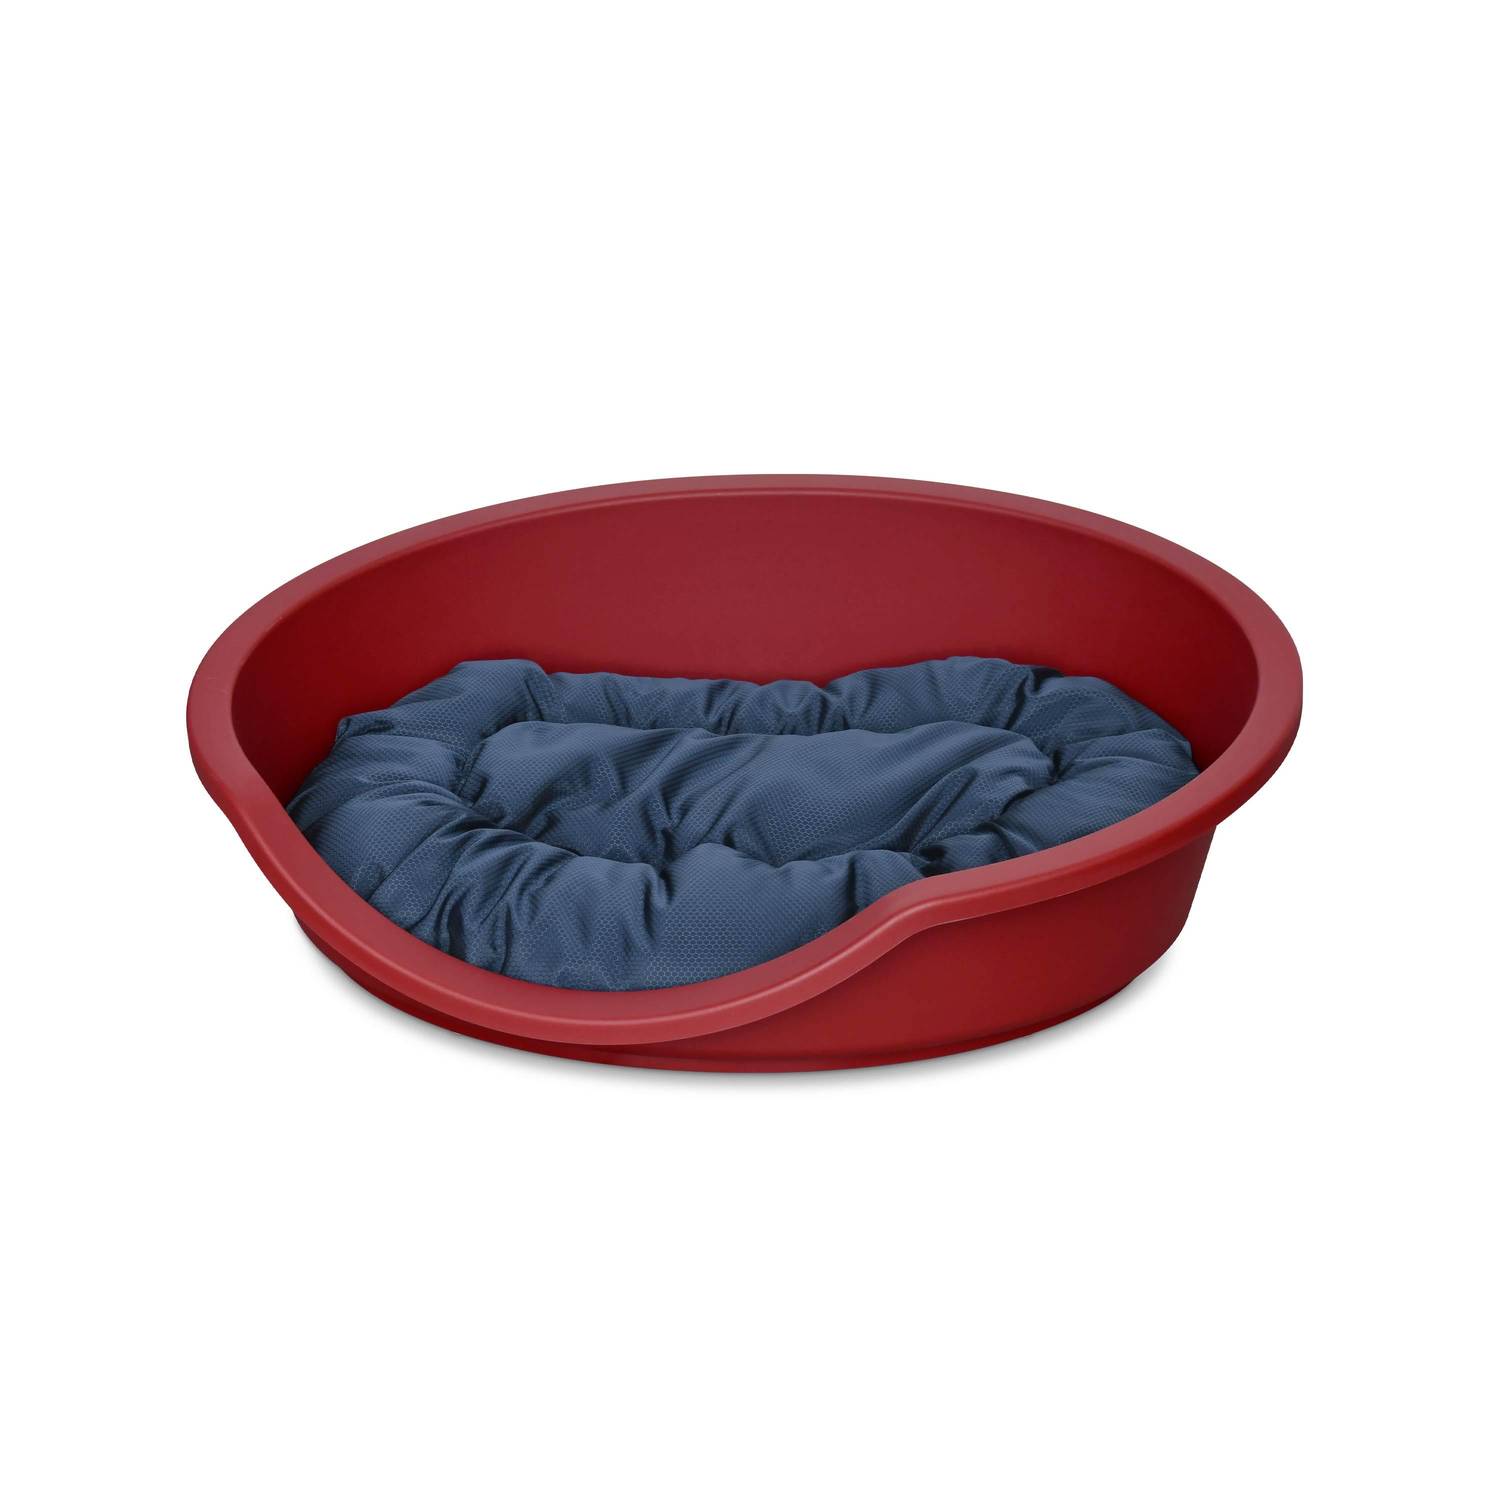 Corbeille en plastique rouge pour grand chien +  Coussin en coton et en polyester bleu marine et gris 85 x 70 cm de forme ovale, taille L  Photo1